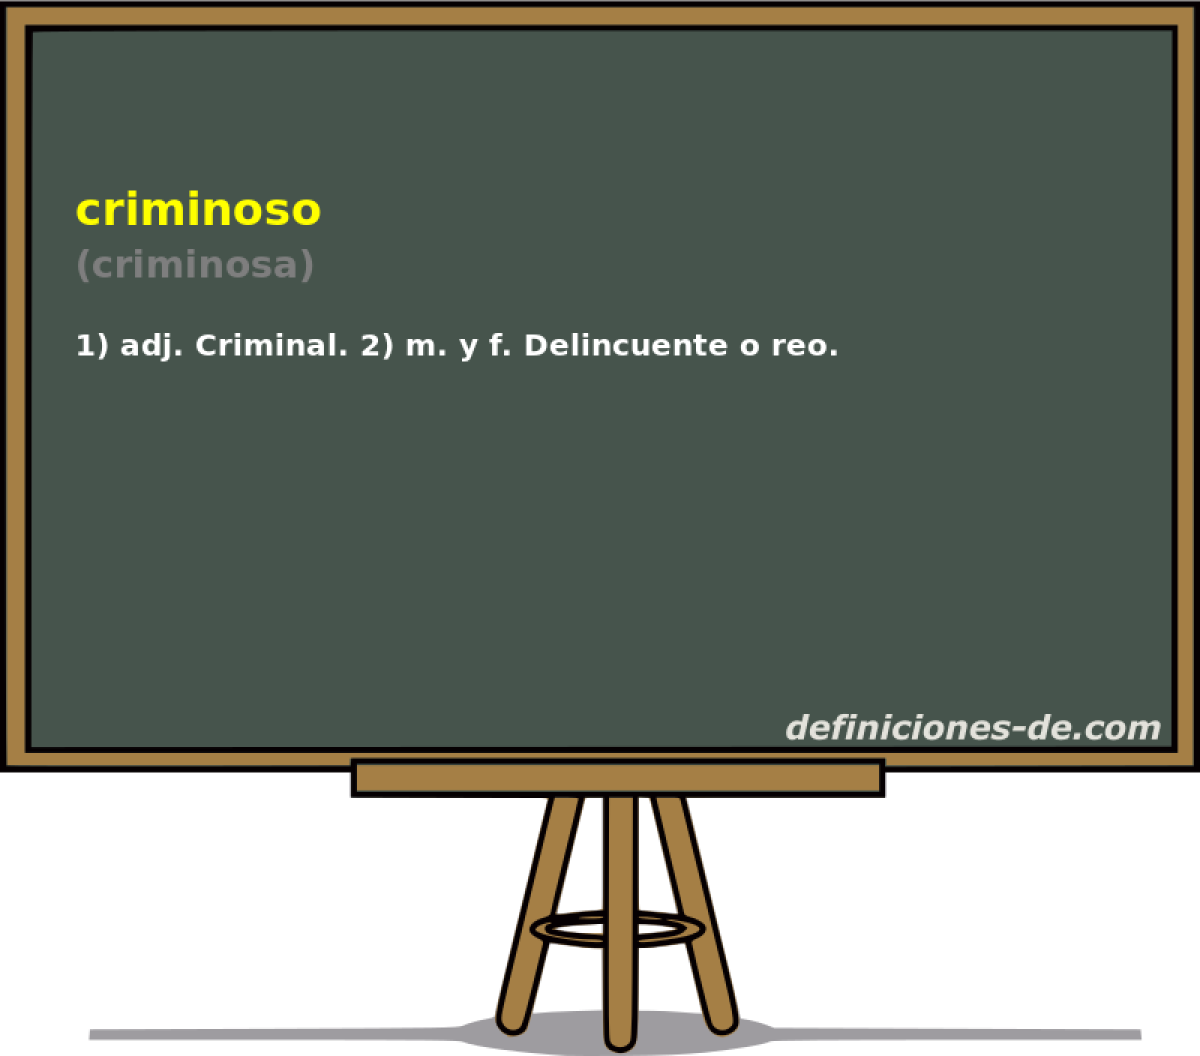 criminoso (criminosa)